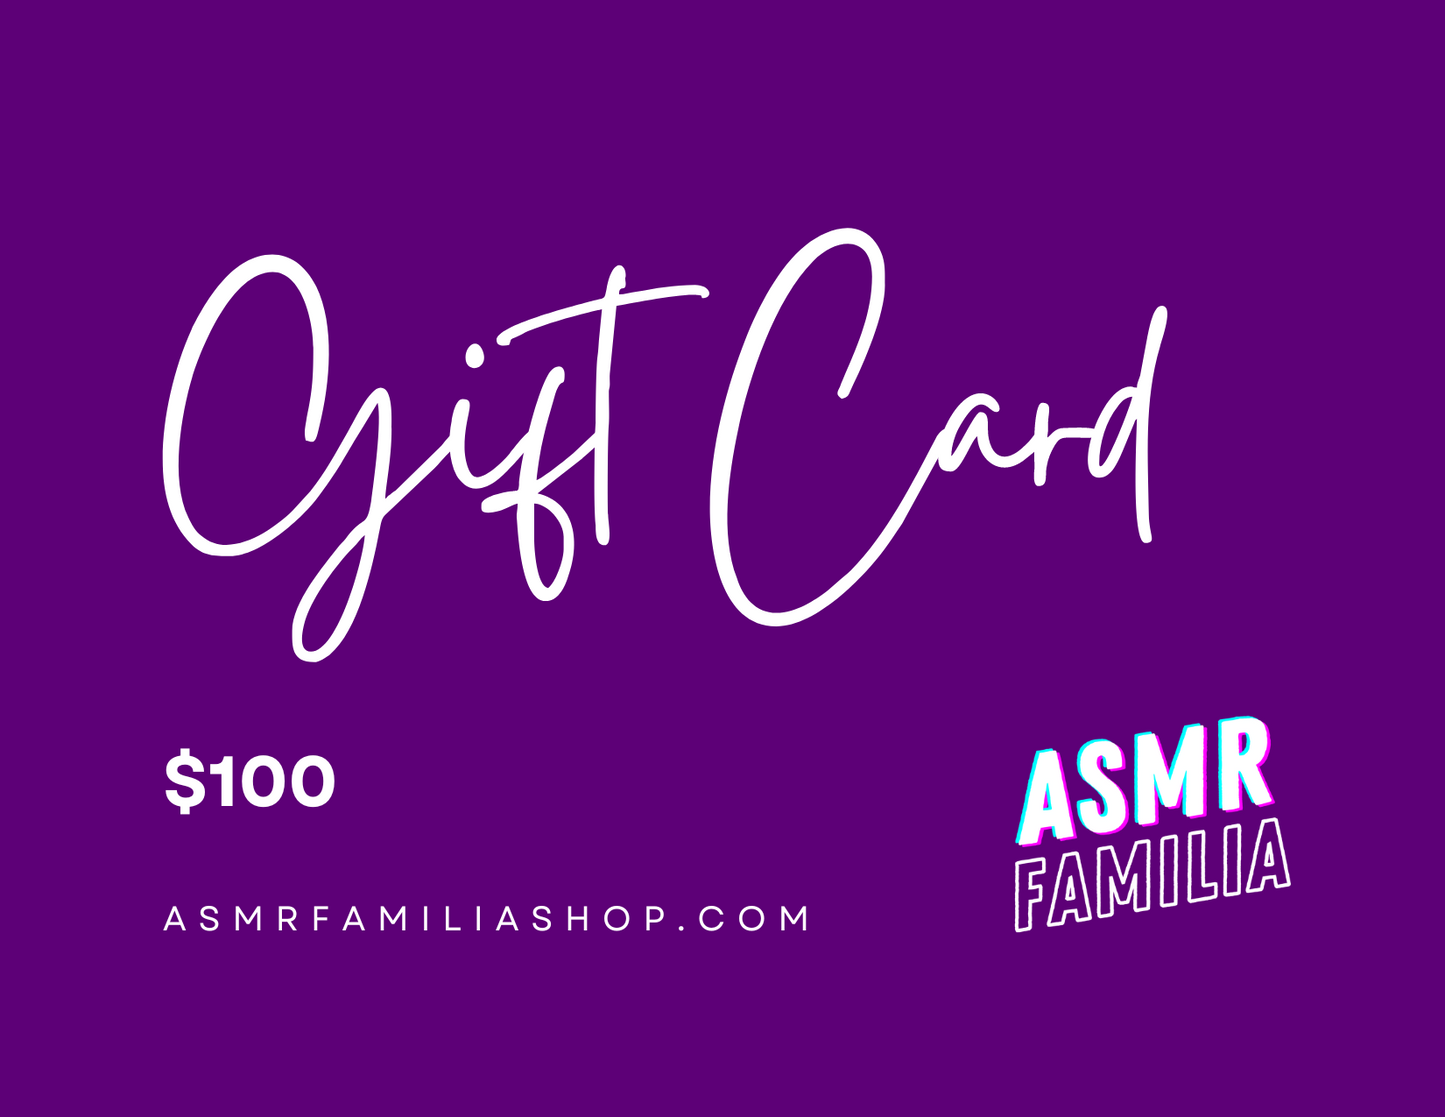 ASMR FAMILIA Gift Card